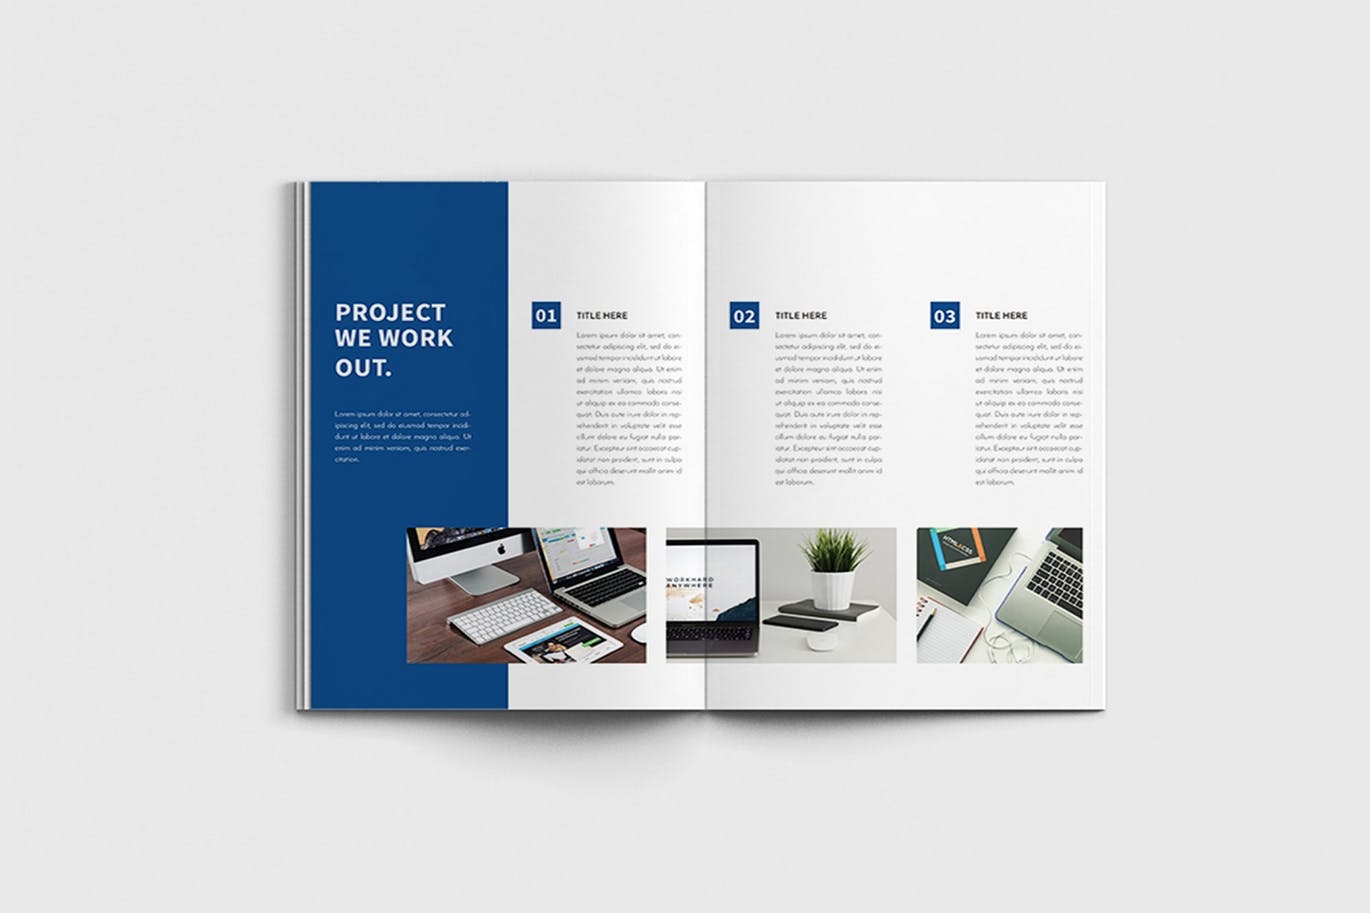 商业计划书/企业简介宣传画册设计模板 Walkers – A4 Business Brochure Template插图(7)